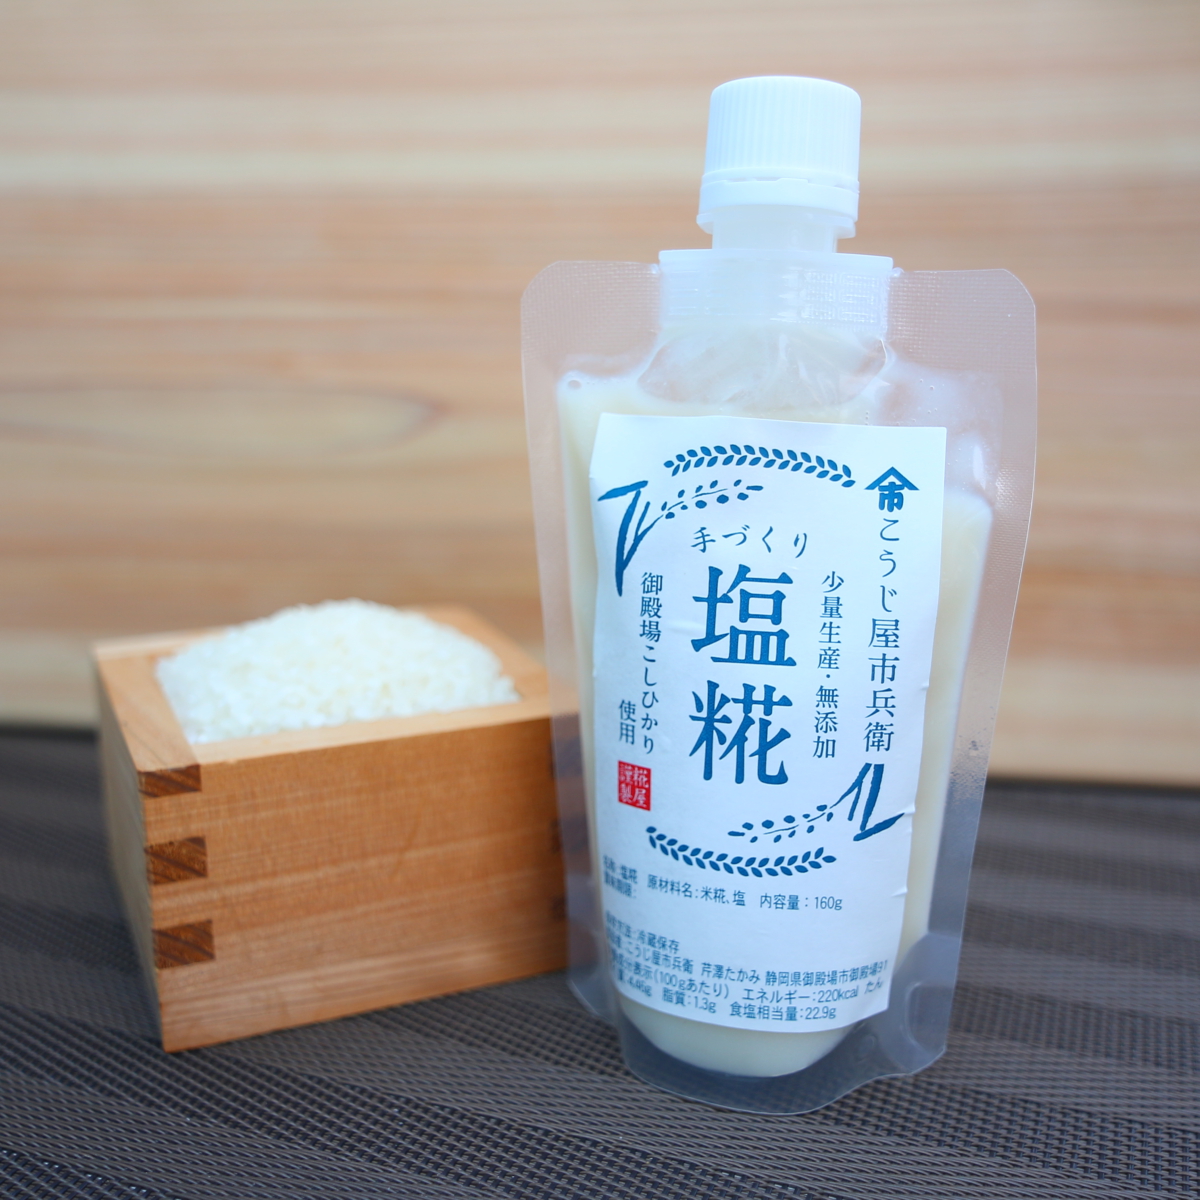 富士山の恵みからつくった魔法の調味料「塩糀」160g 6本セットの返納品画像イメージ